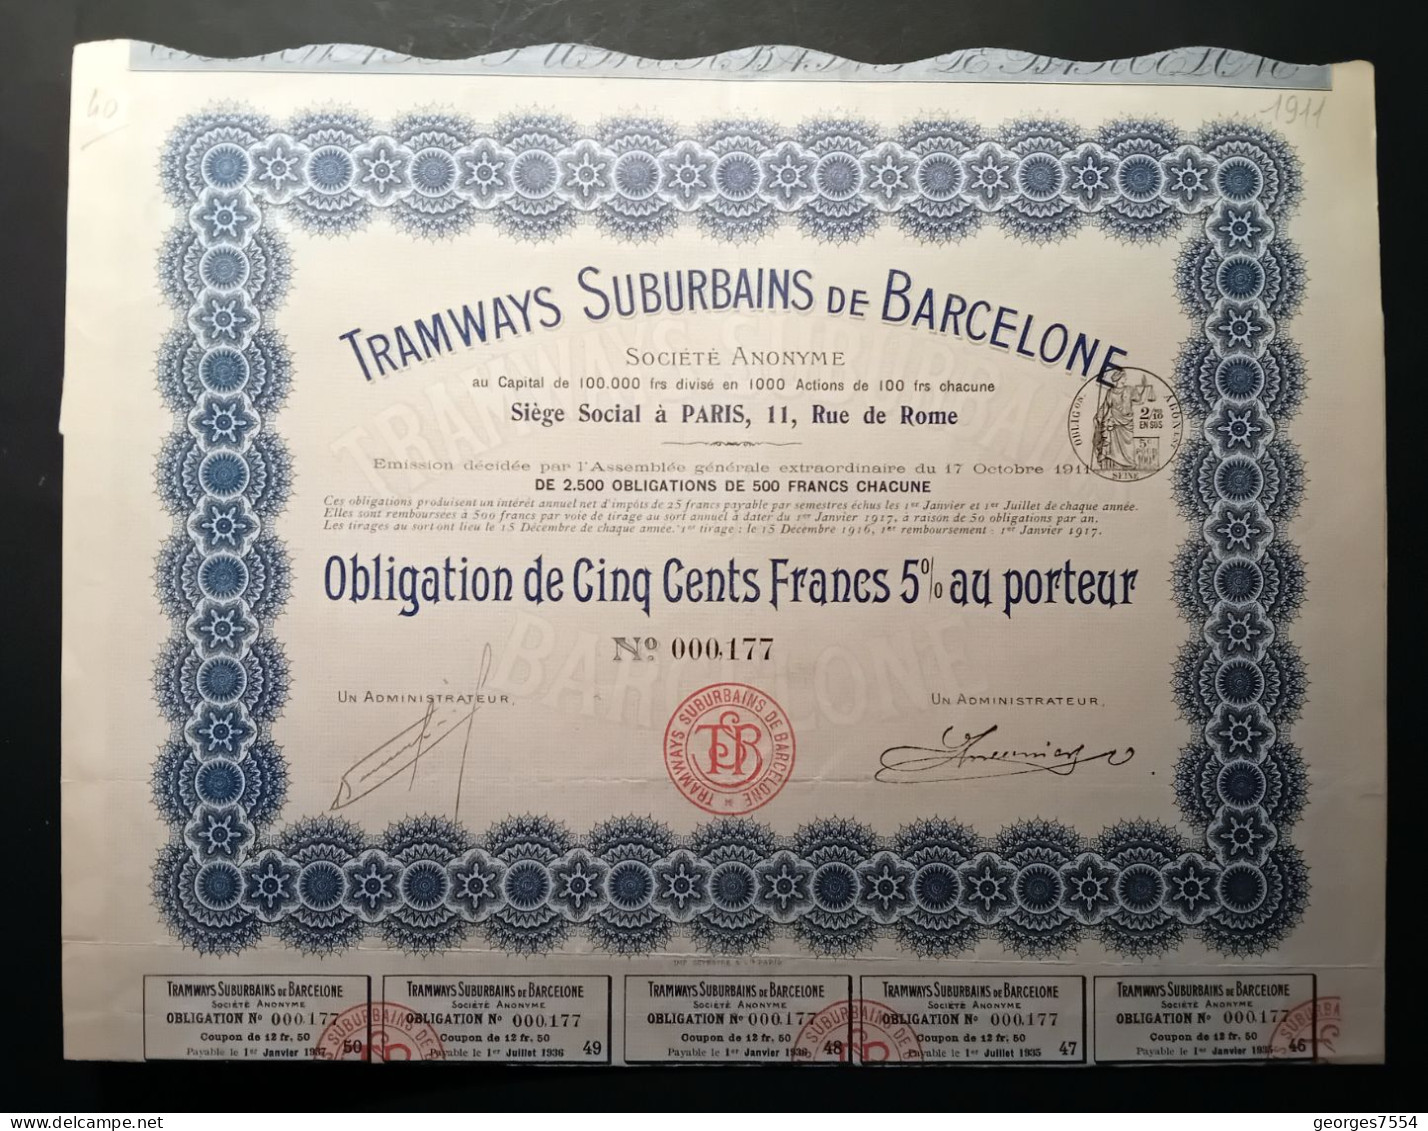 TRAMWAYS SUBURBAINS DE BARCELONE DE JOUISSANCE AU PORTEUR OBLIGATION DE 500 FRANCS 1911 - Transporte